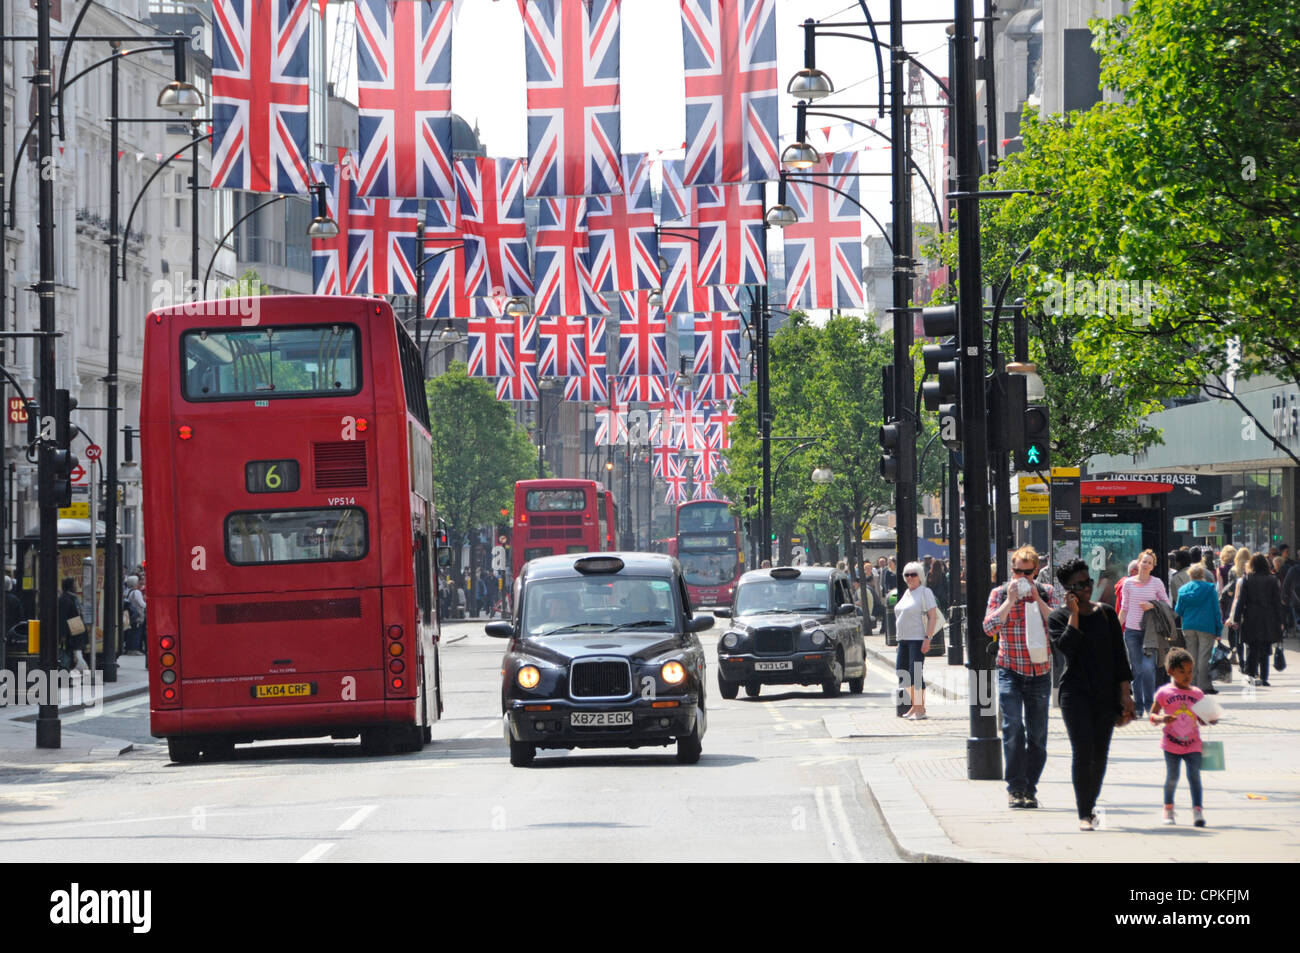 Shopping al dettaglio strada Red London autobus a due piani e taxi nero in scena Oxford Street con Jubilee & 2012 Olimpiadi Union Jack bandiere Inghilterra UK Foto Stock